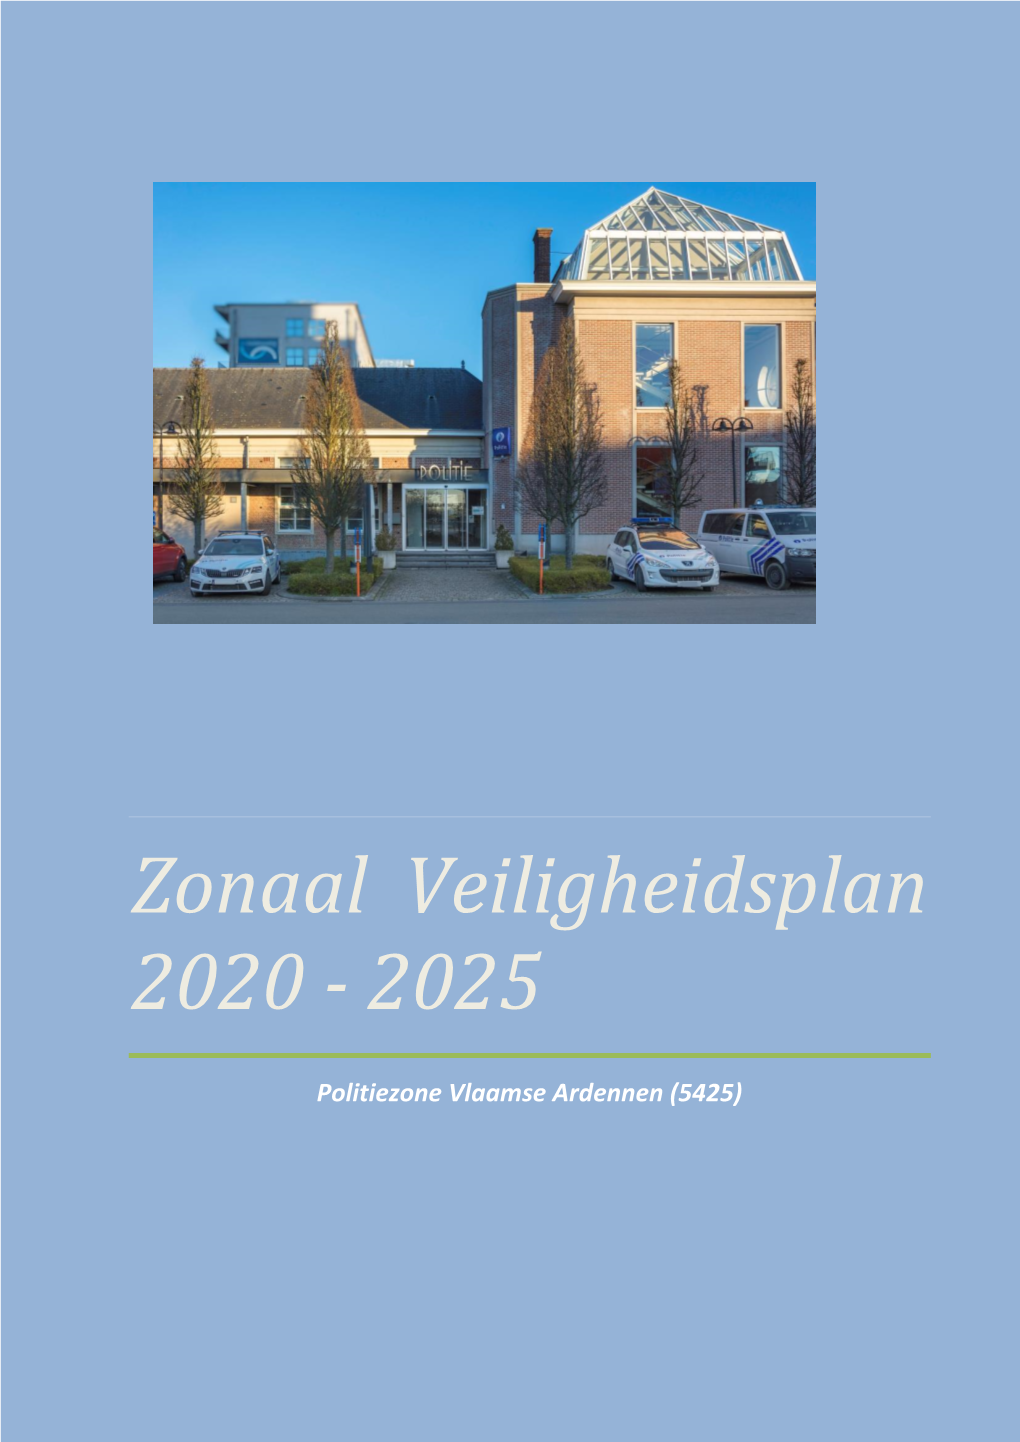 Zonaal Veiligheidsplan 2020 - 2025